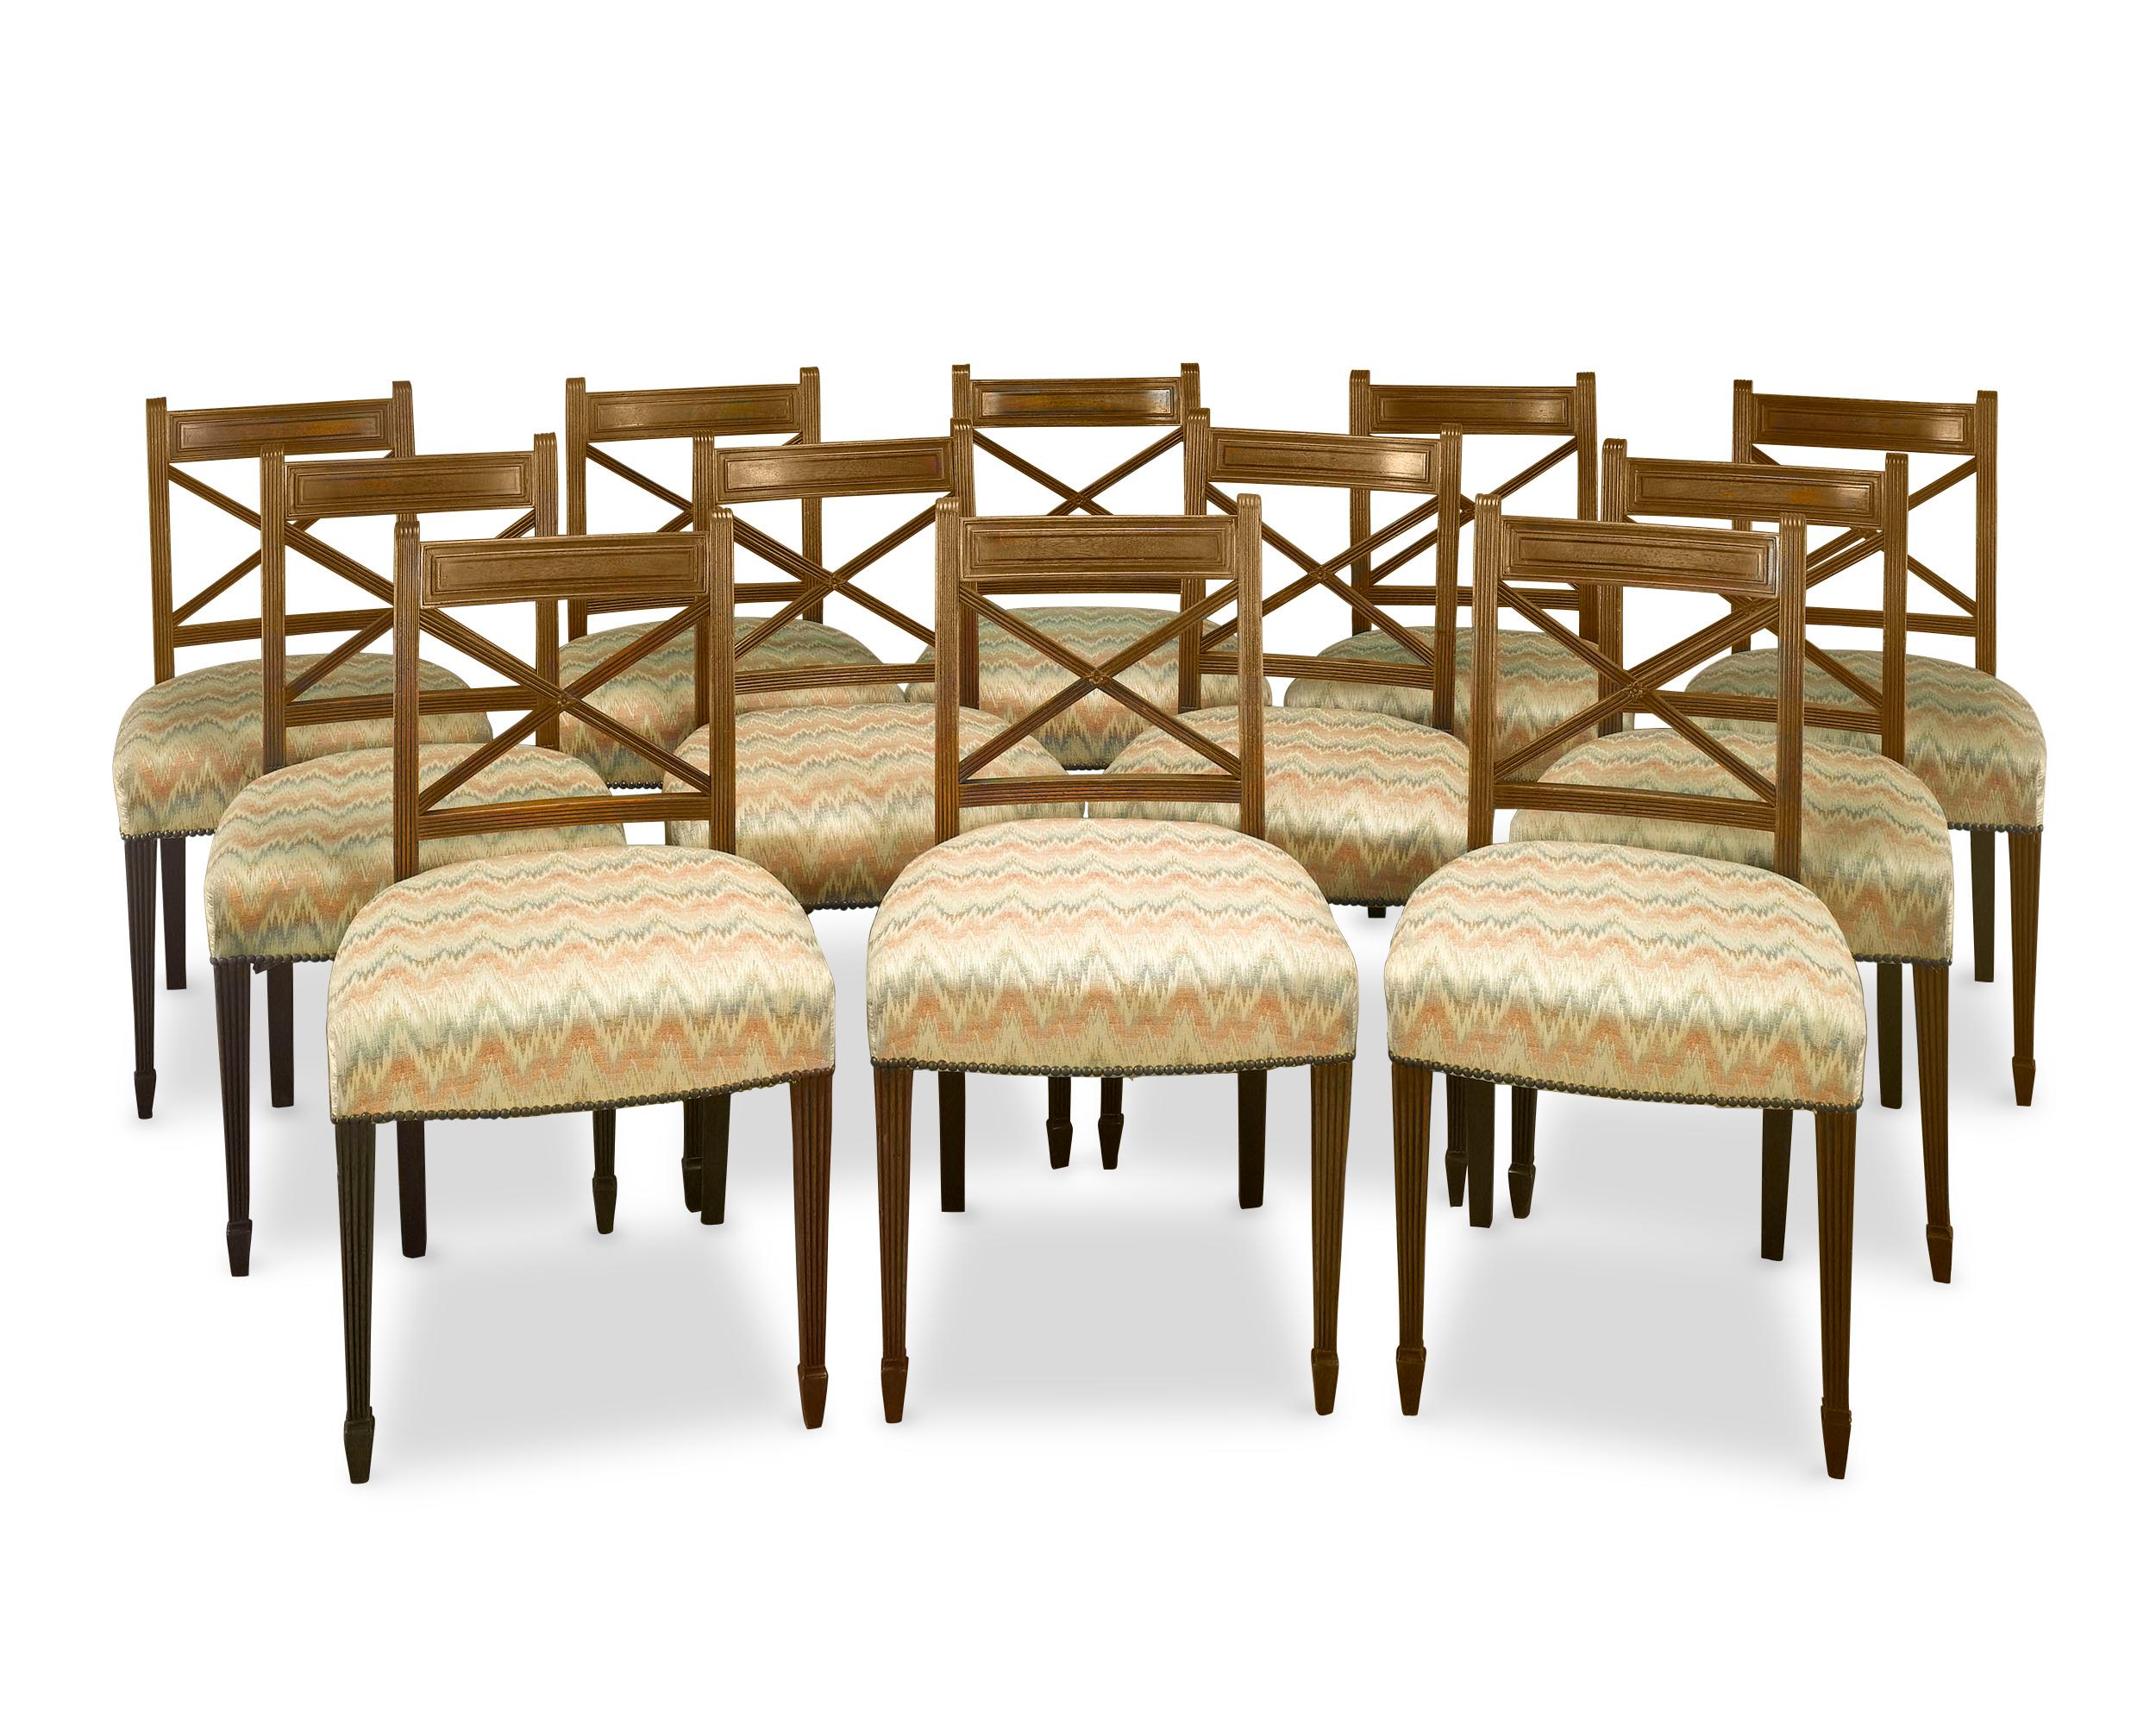 Dieser hübsche Satz von 12 Esszimmerstühlen aus der Regency-Zeit ist ein außergewöhnliches Beispiel für Regency-Möbel, sowohl in der Konstruktion als auch im Design. Die Stühle sind aus reichem Mahagoniholz gefertigt und zeichnen sich durch